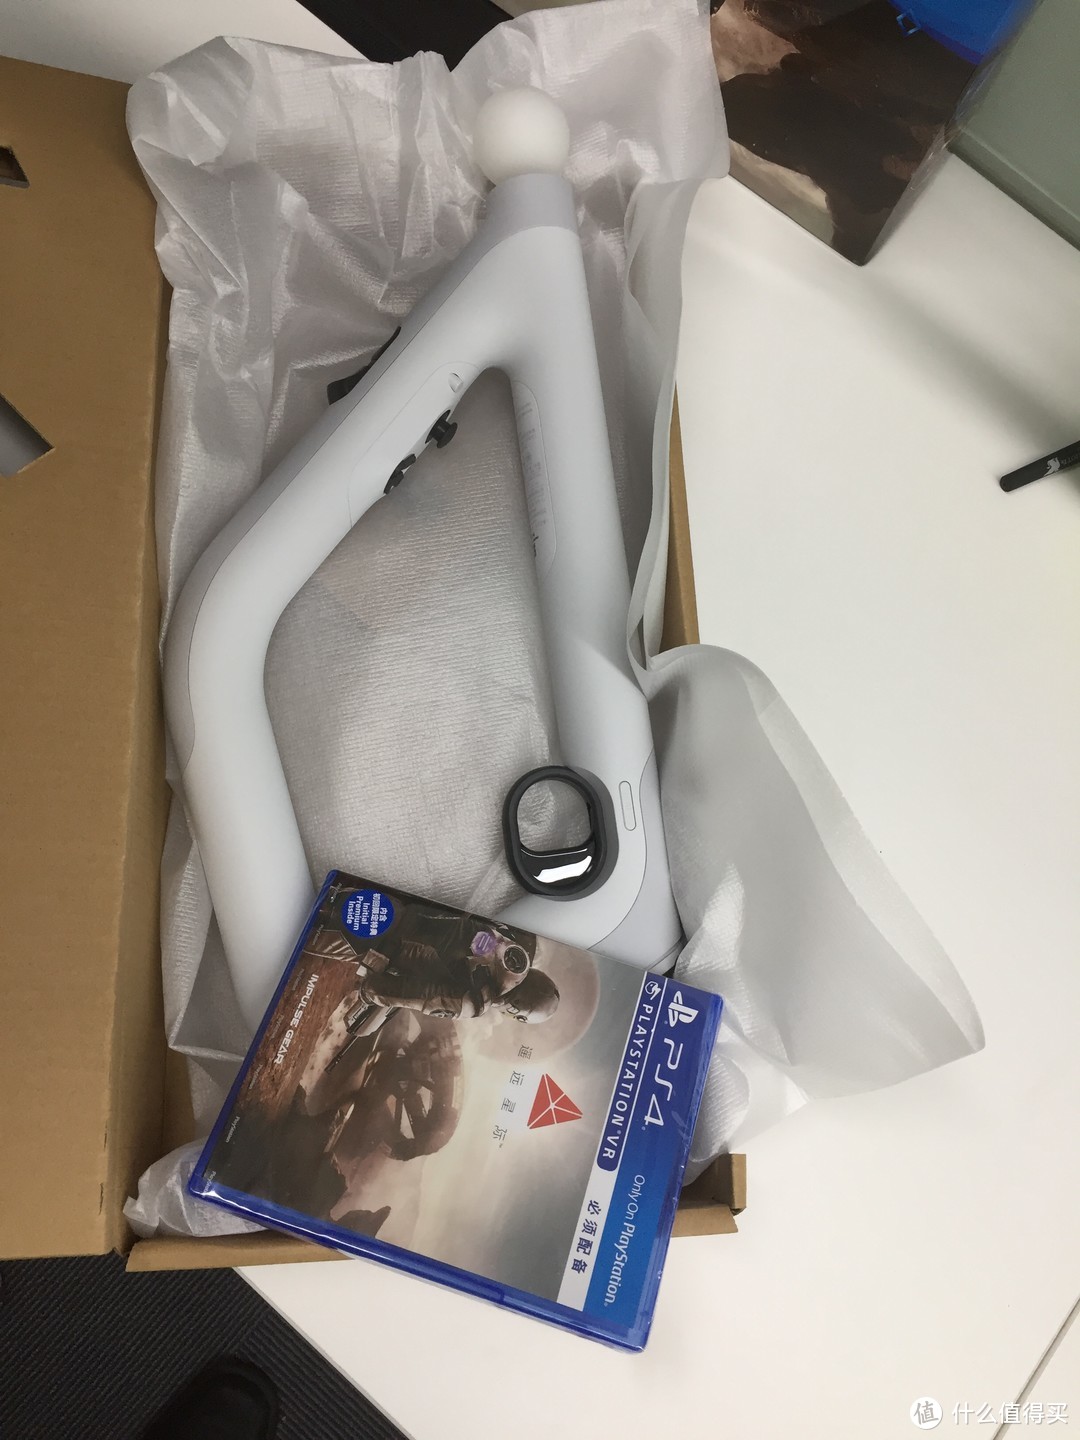 PlayStation VR 射击控制器《遥远星际》套装 开箱